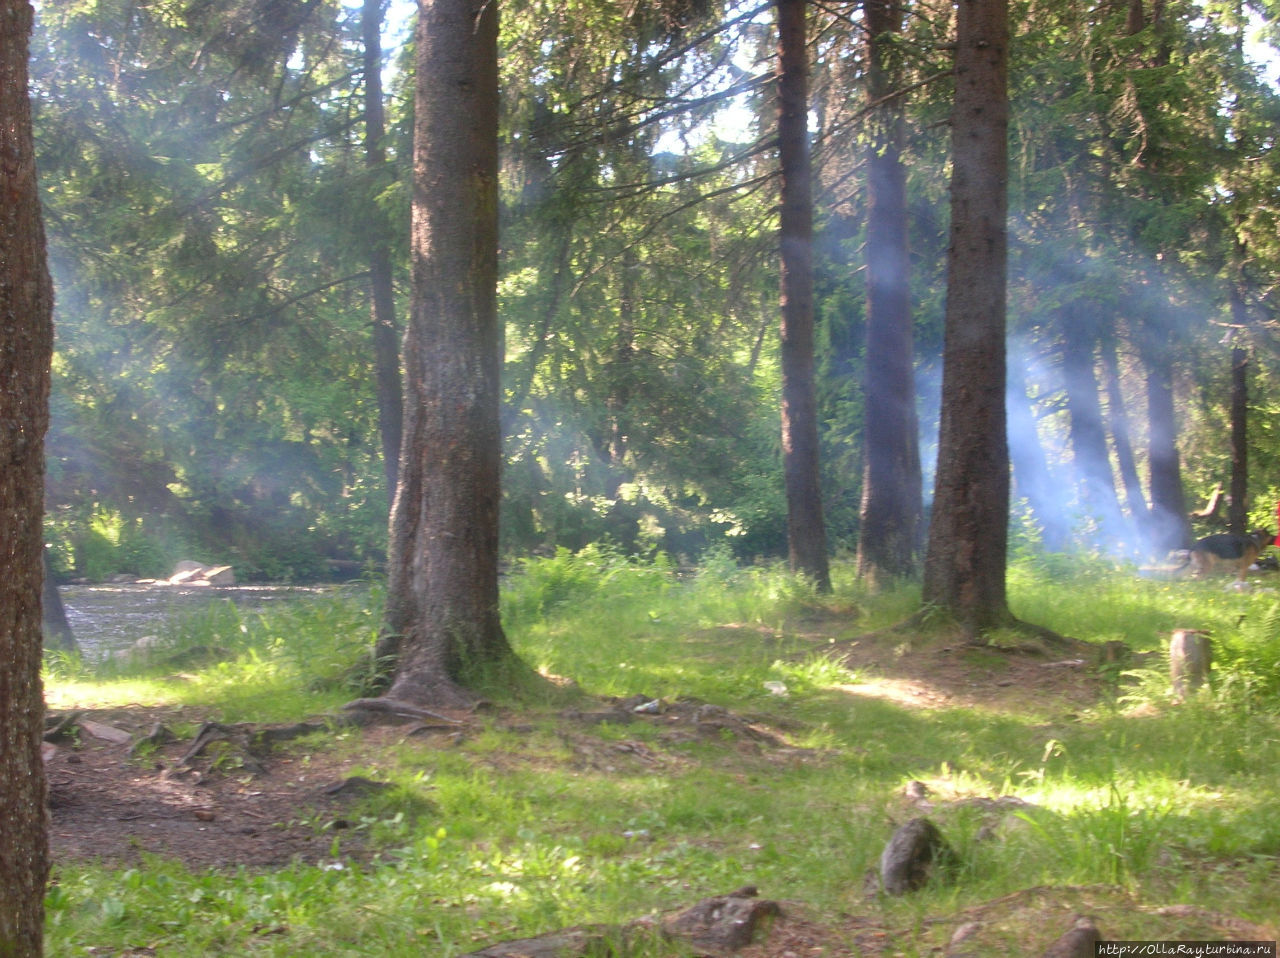 Дым от шашлыков в лучах солнца. Курган Петрозаводск, Россия